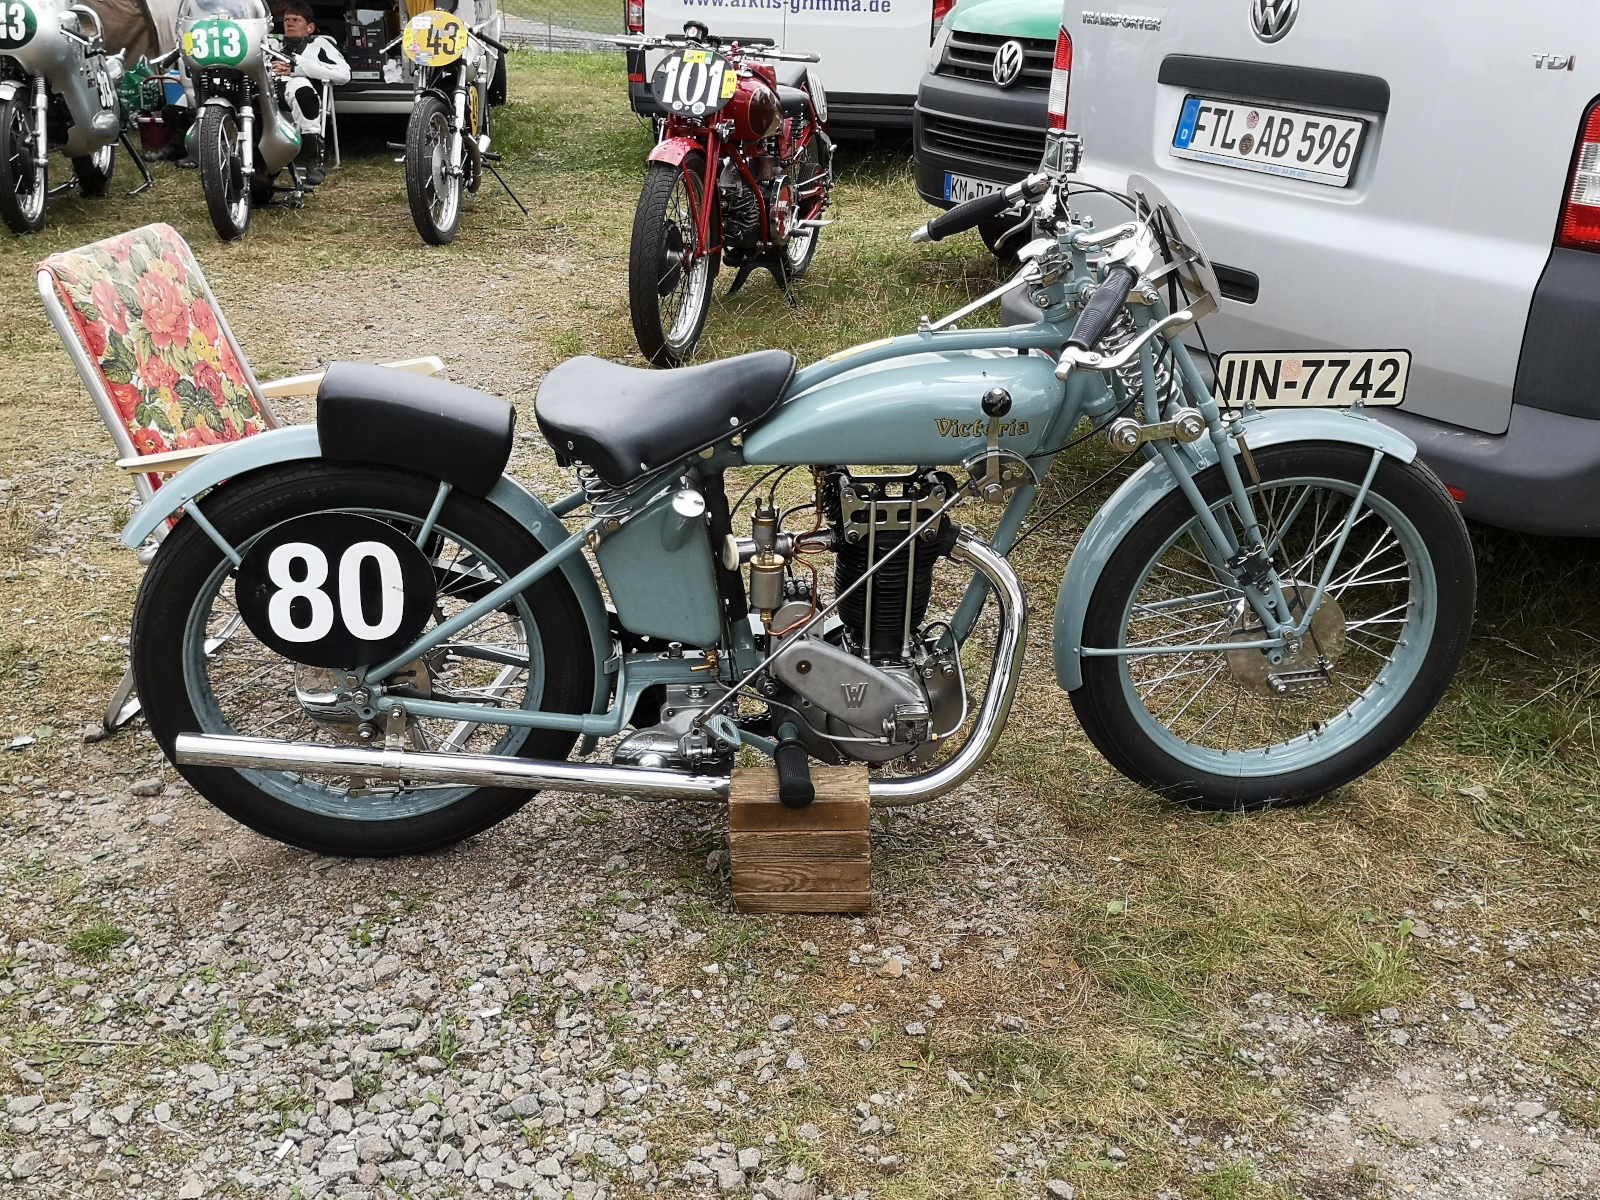 Viktoria-Motorrad aus den 1930ern